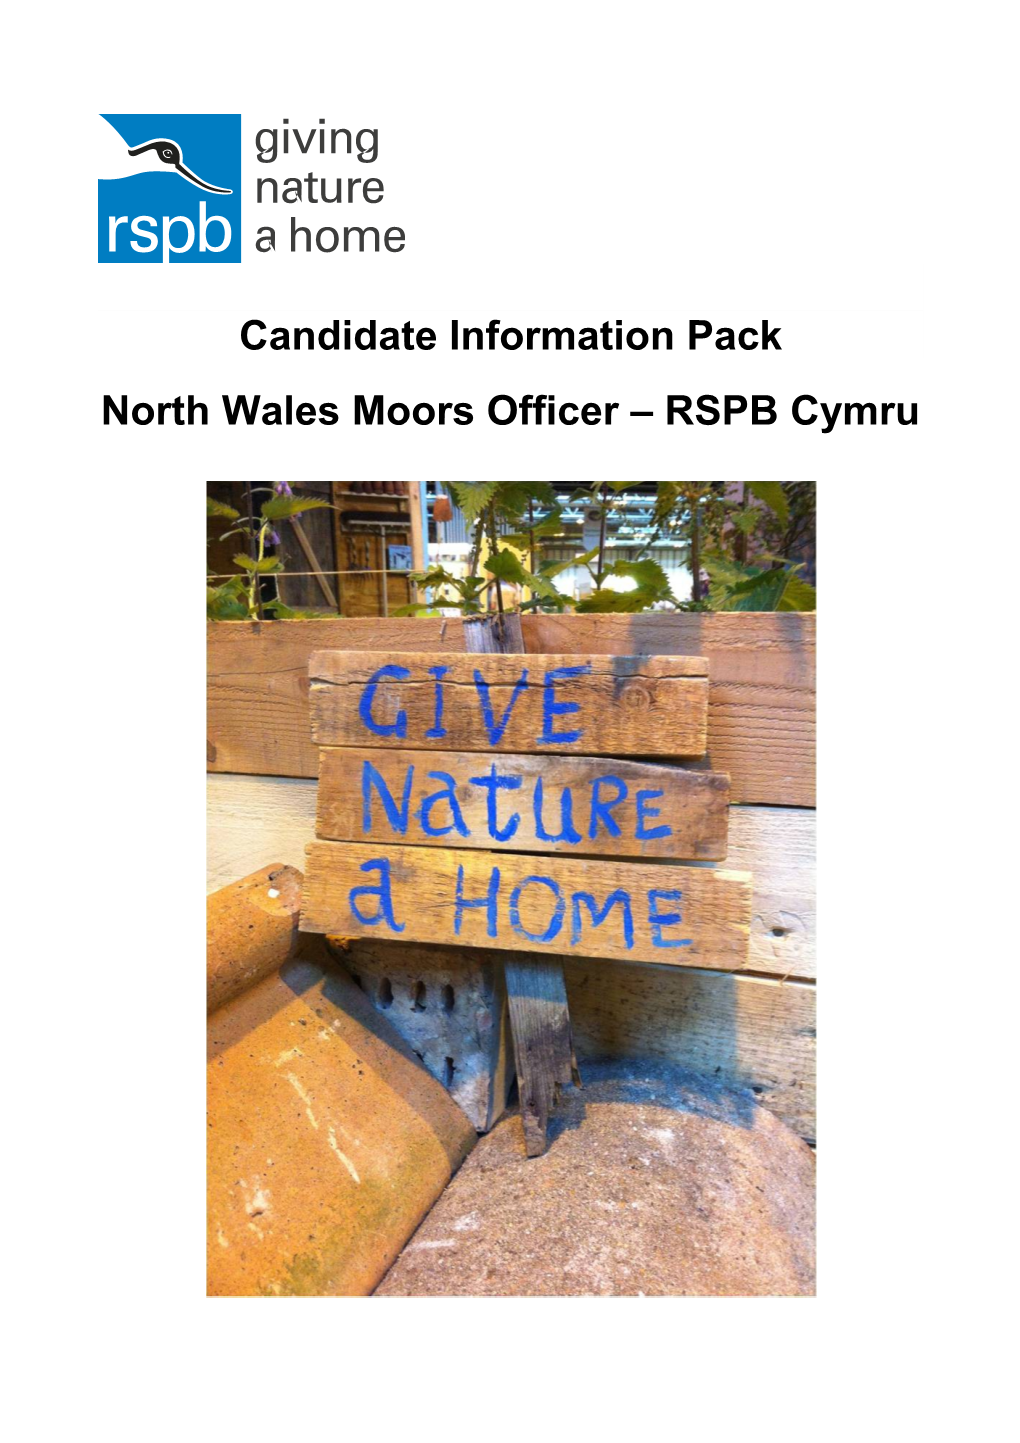 North Wales Moors Officer RSPB Cymru